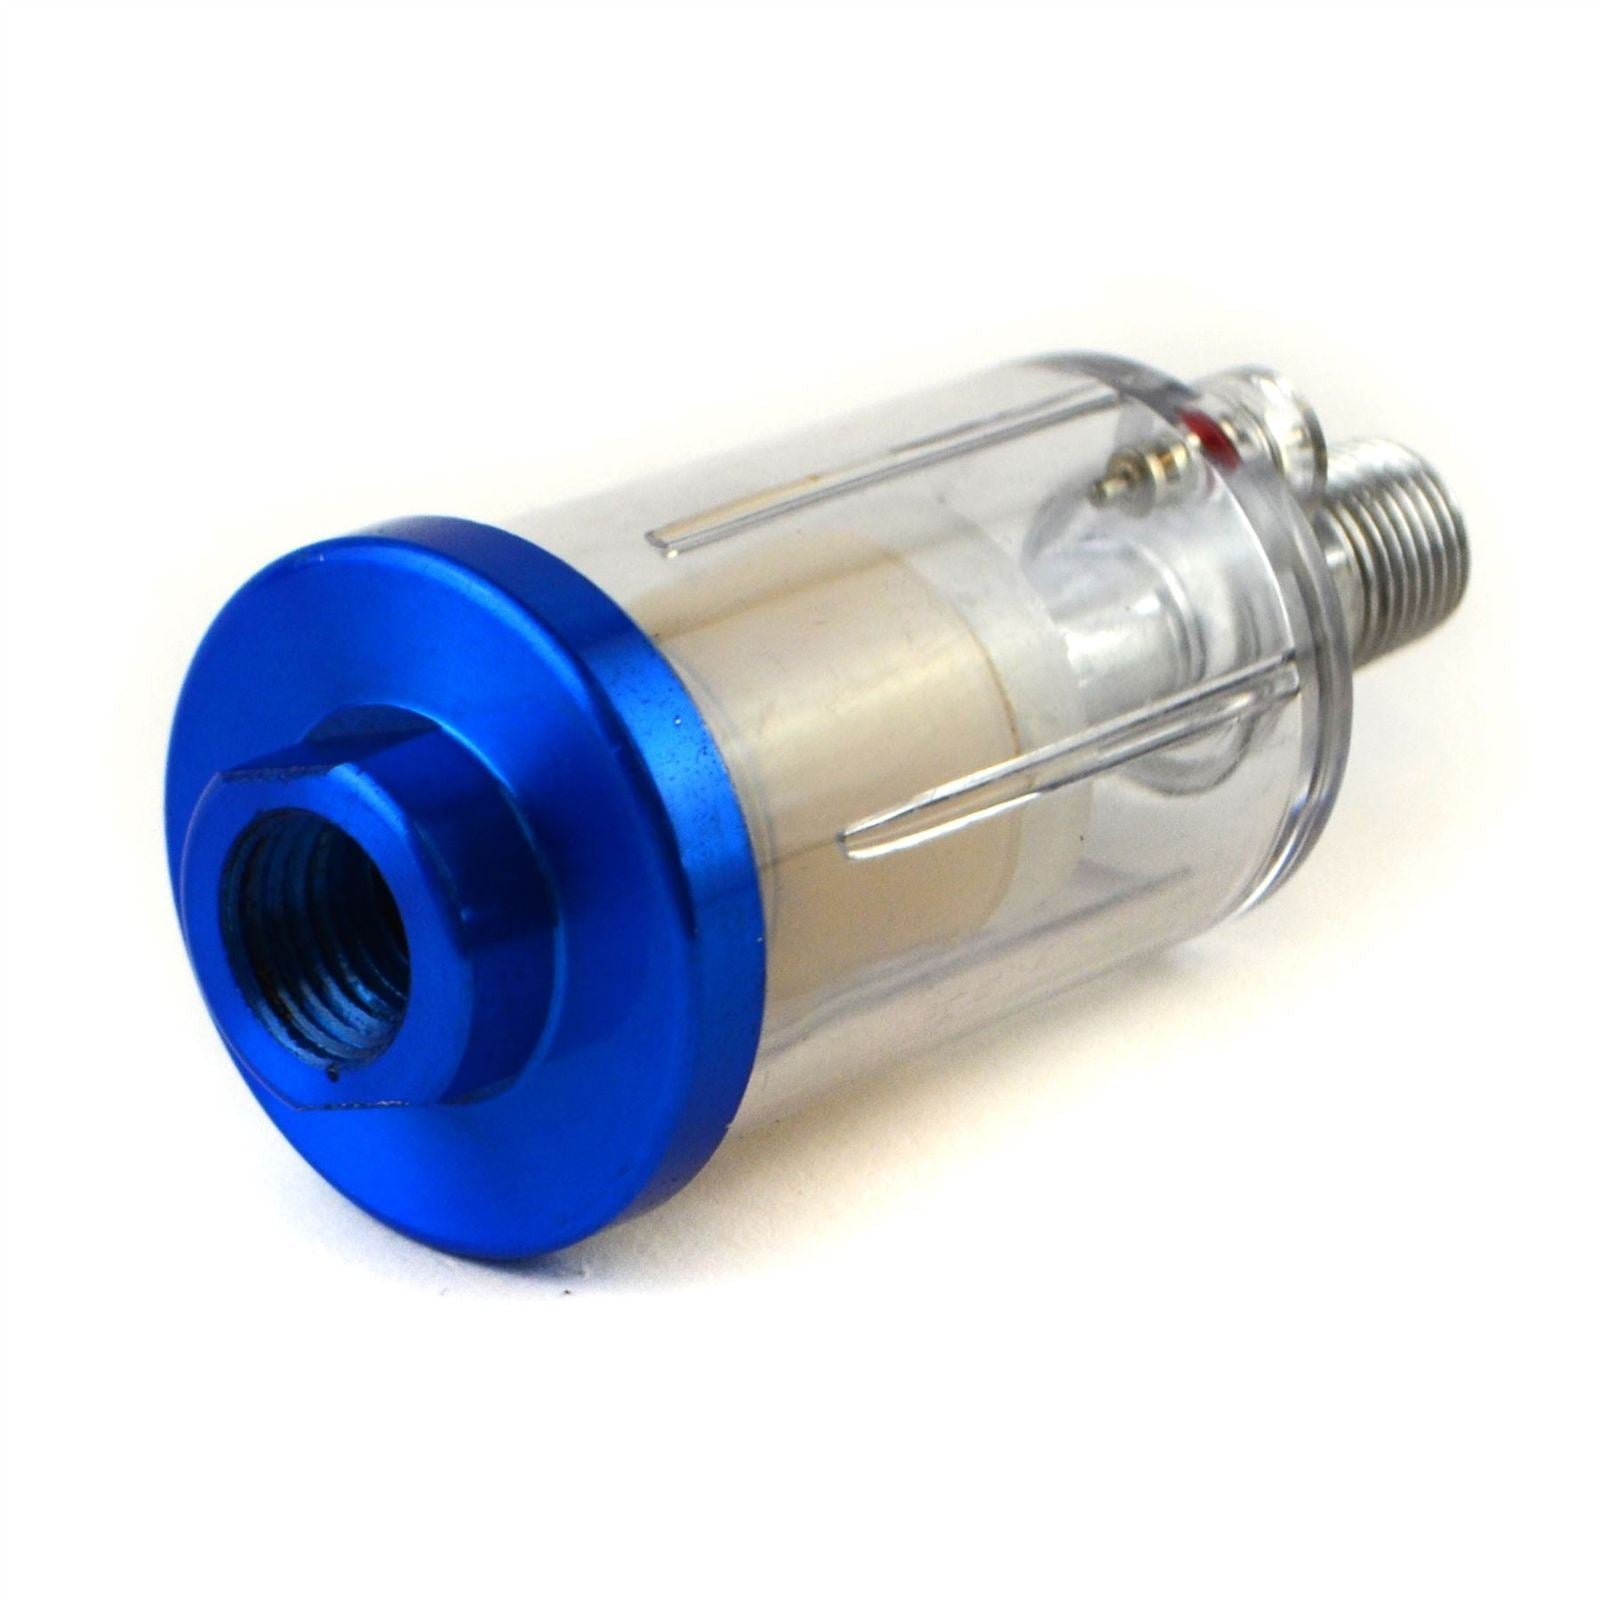 HVLP Gravity Feed Spray Gun 1.5mm & Inline Moisture Trap / Pressure Regulator